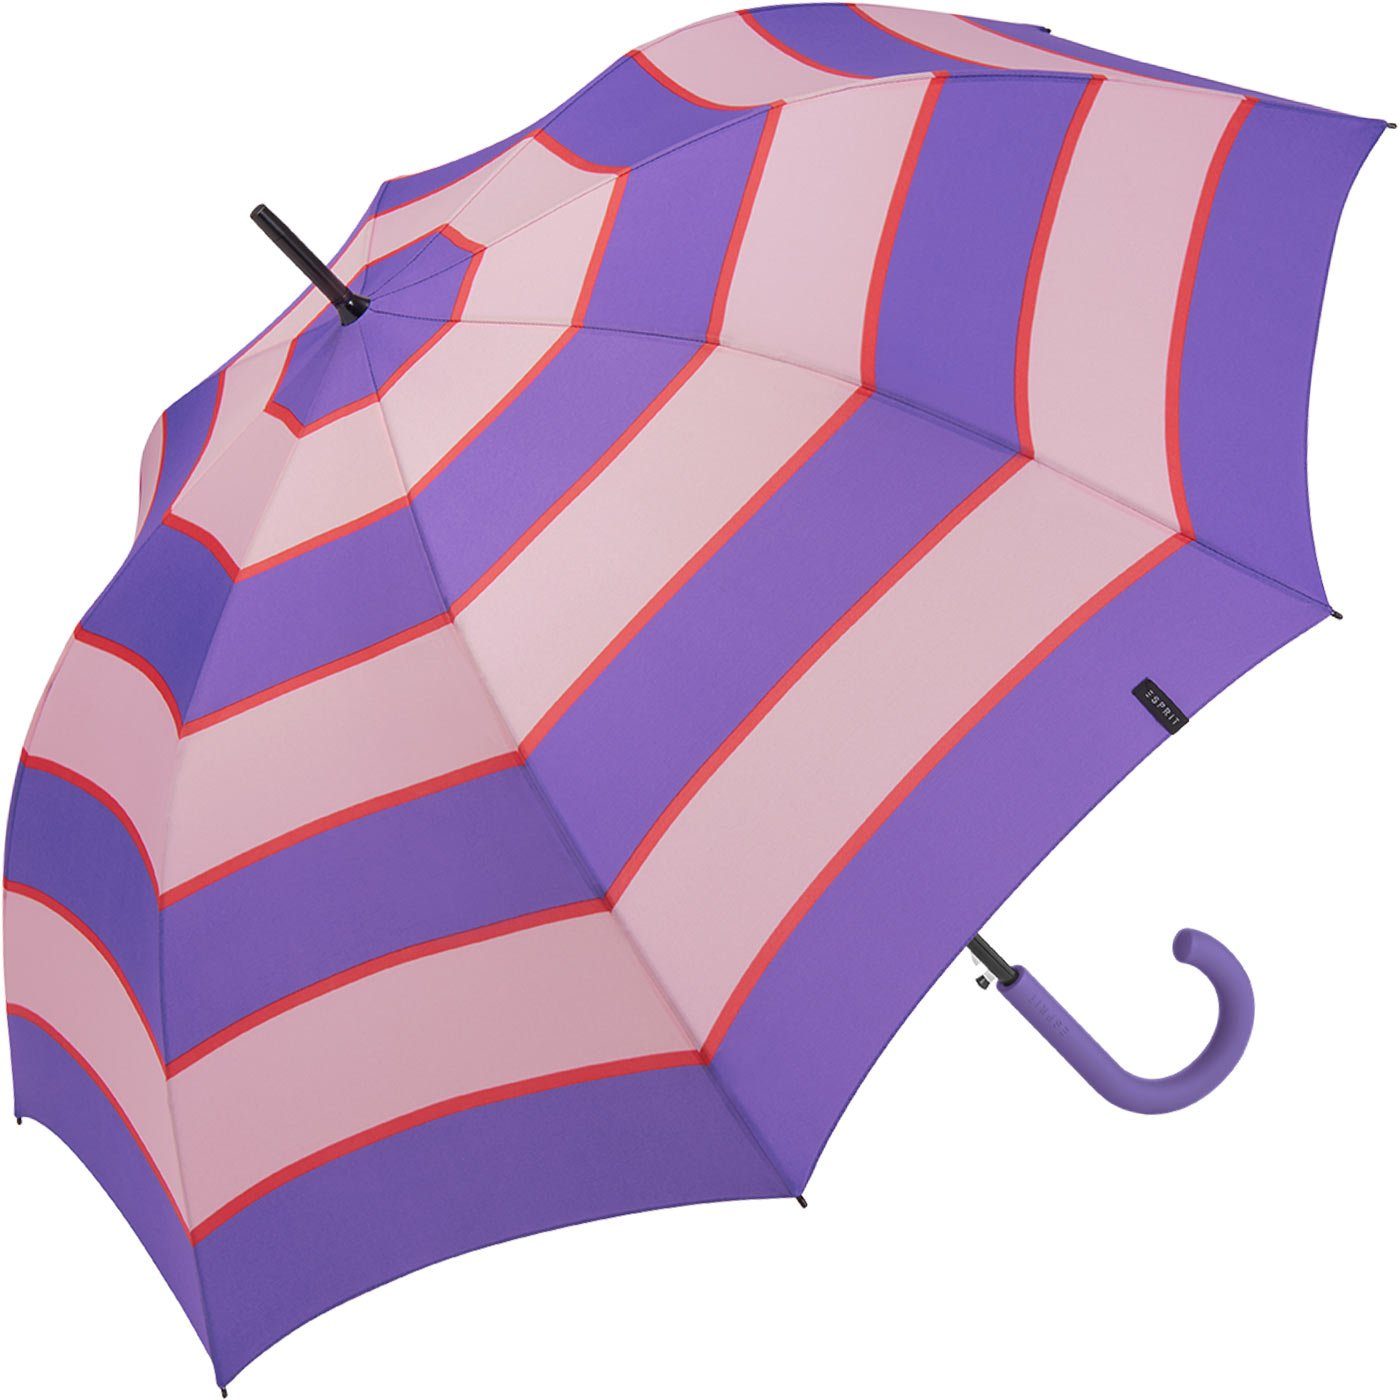 Esprit Langregenschirm Damen stabil, Streifen-Muster Collegiate Auf-Automatik Stripe lila-altrosa deeplavender, mit groß